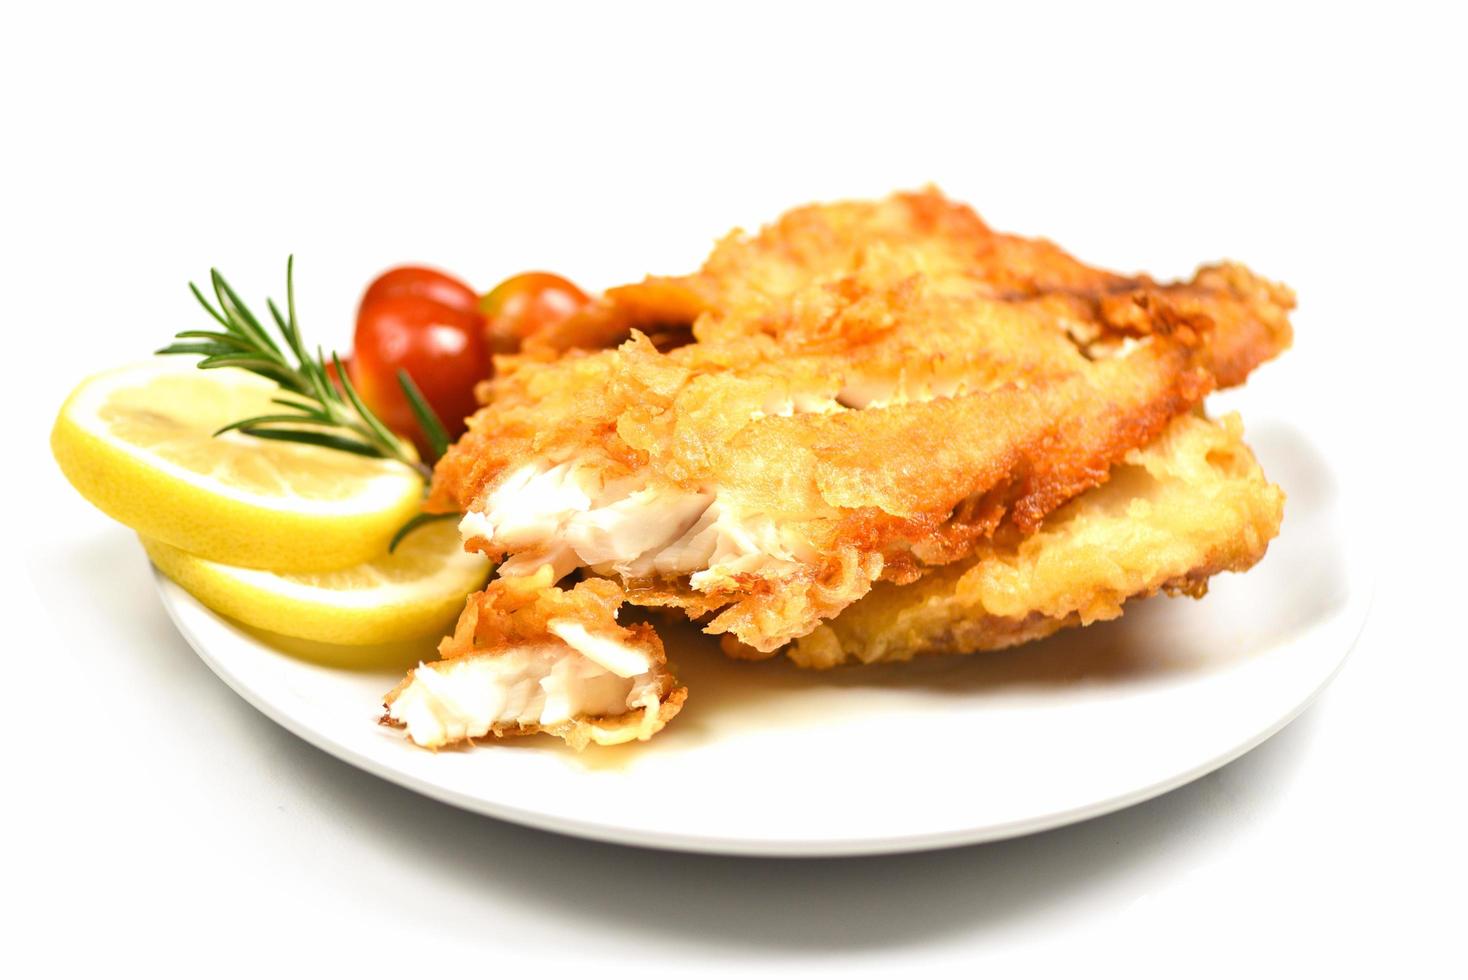 Filete de pescado frito en rodajas para bistec o ensalada cocinar alimentos con hierbas especias romero y limón - filete de tilapia pescado crujiente servido en un plato blanco foto